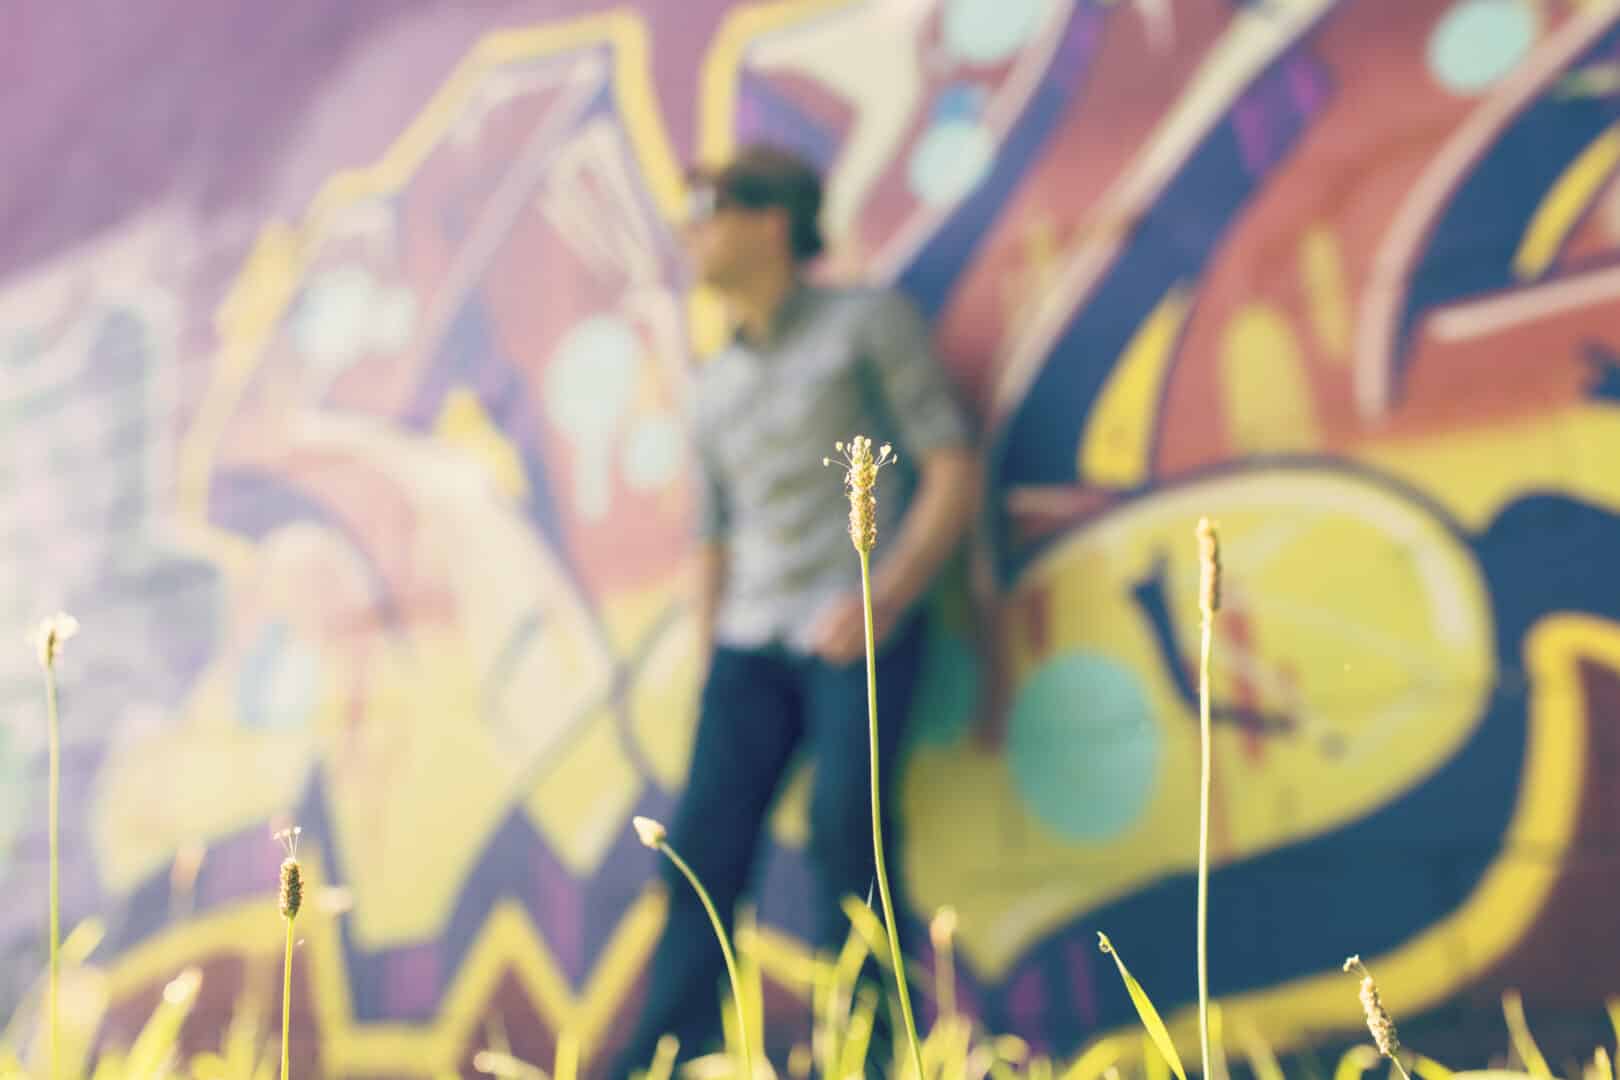 Nuoren elo -kurssin kuvituskuvana nuori mies seisoo seinää vasten, jossa on graffiteja.